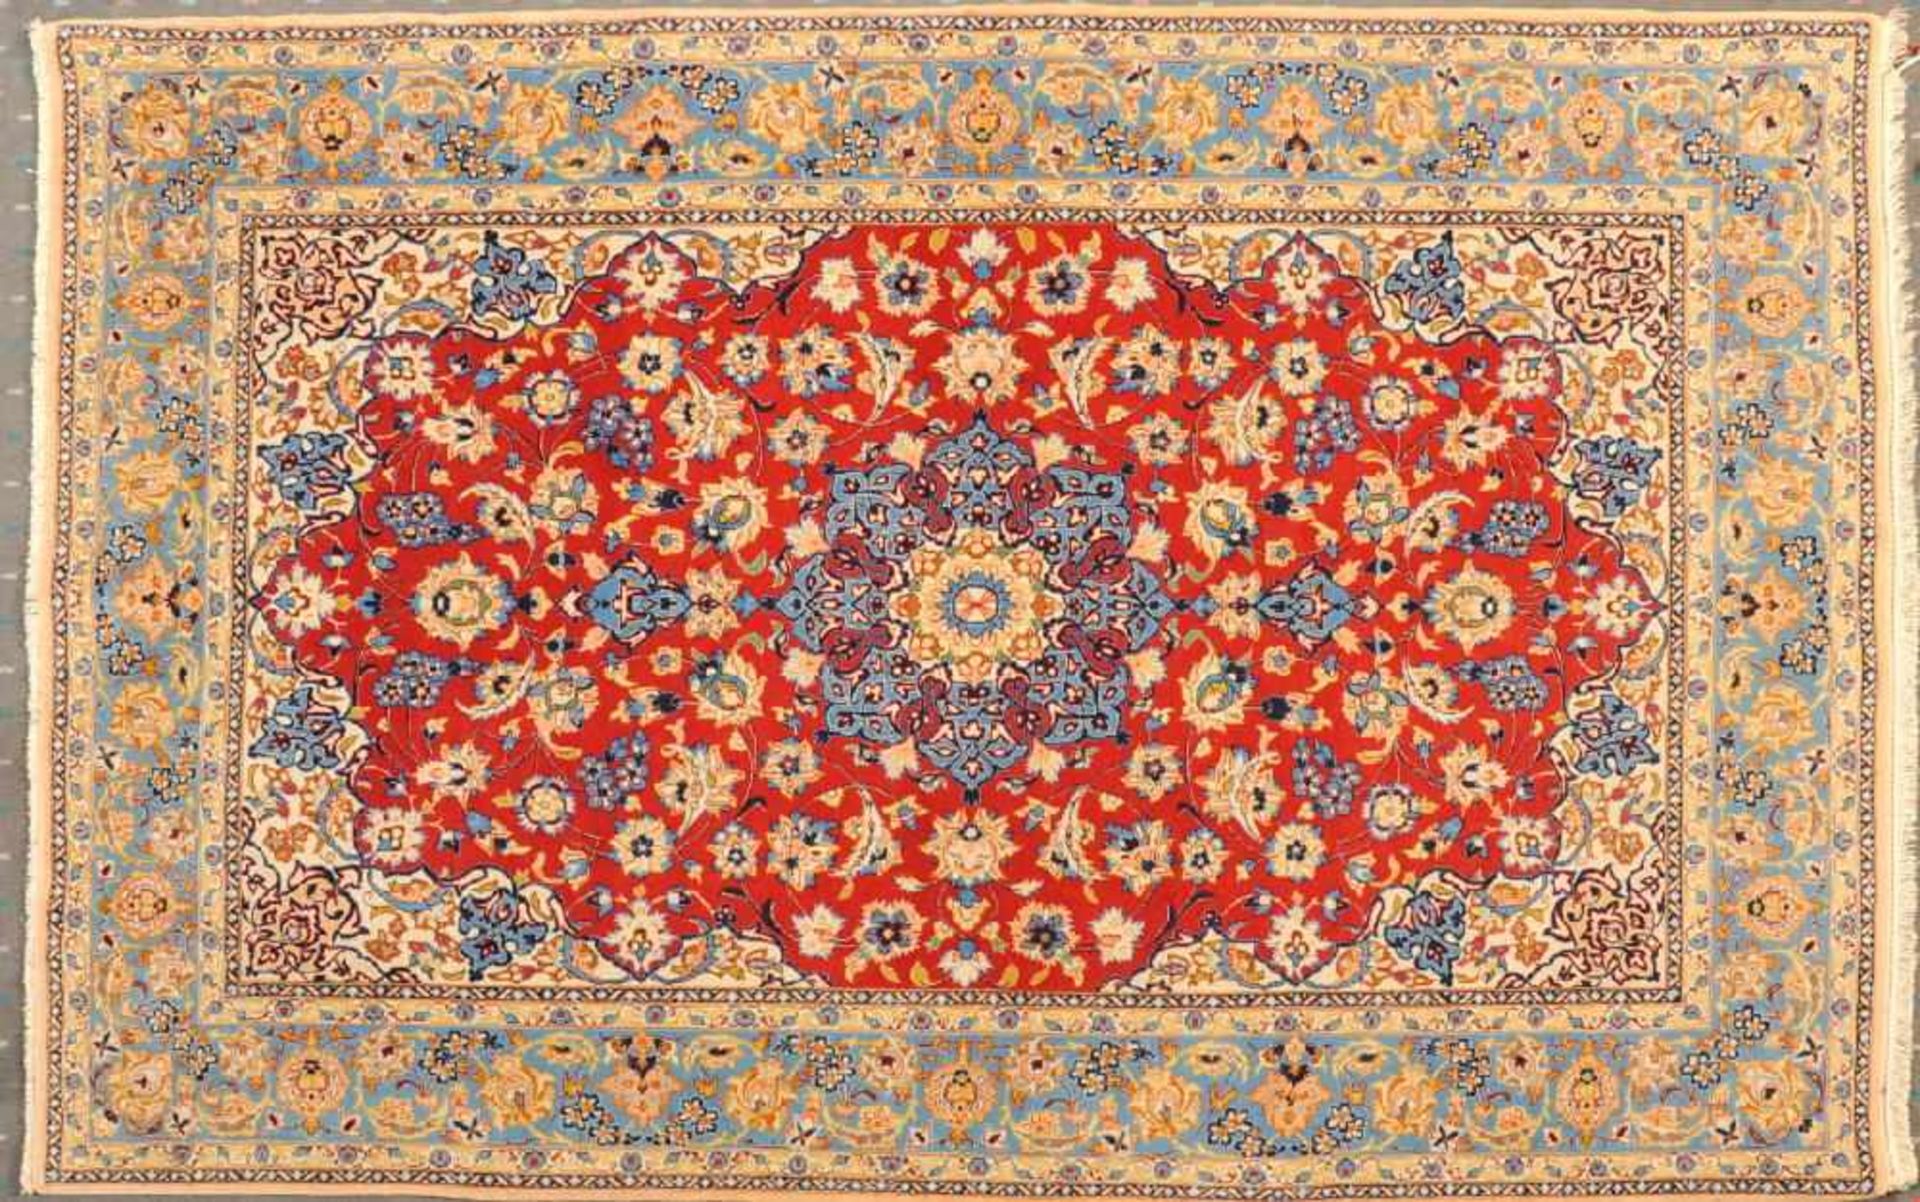 Kork-Isfahan, Persien, 110 x 158 cmälter, Korkwolle, feine Knüpfung, rotgrundig, mehrfarb.